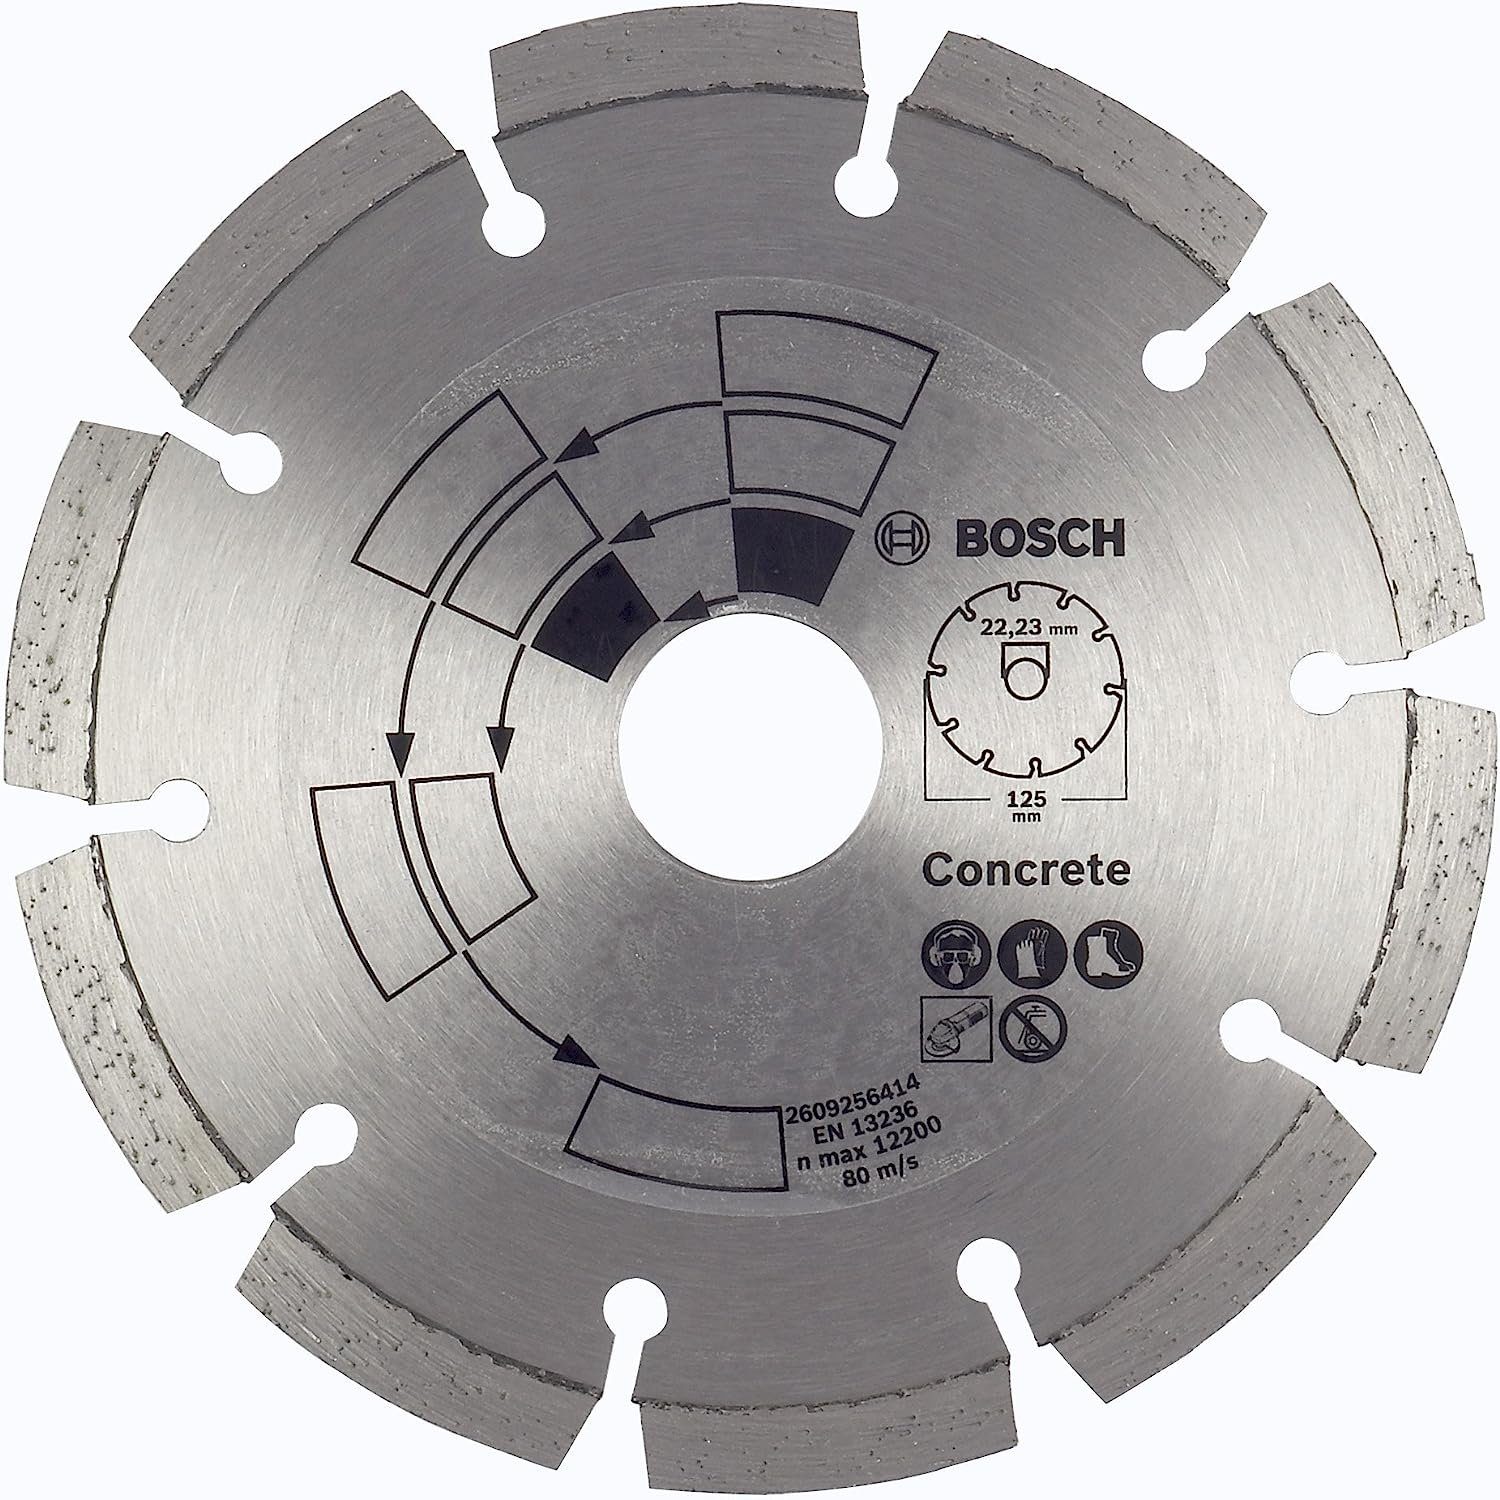 DIY BOSCH Bohrfutter Beton Bosch Top 125 Beton/Granit, 2609256414 Diamanttrennscheibe